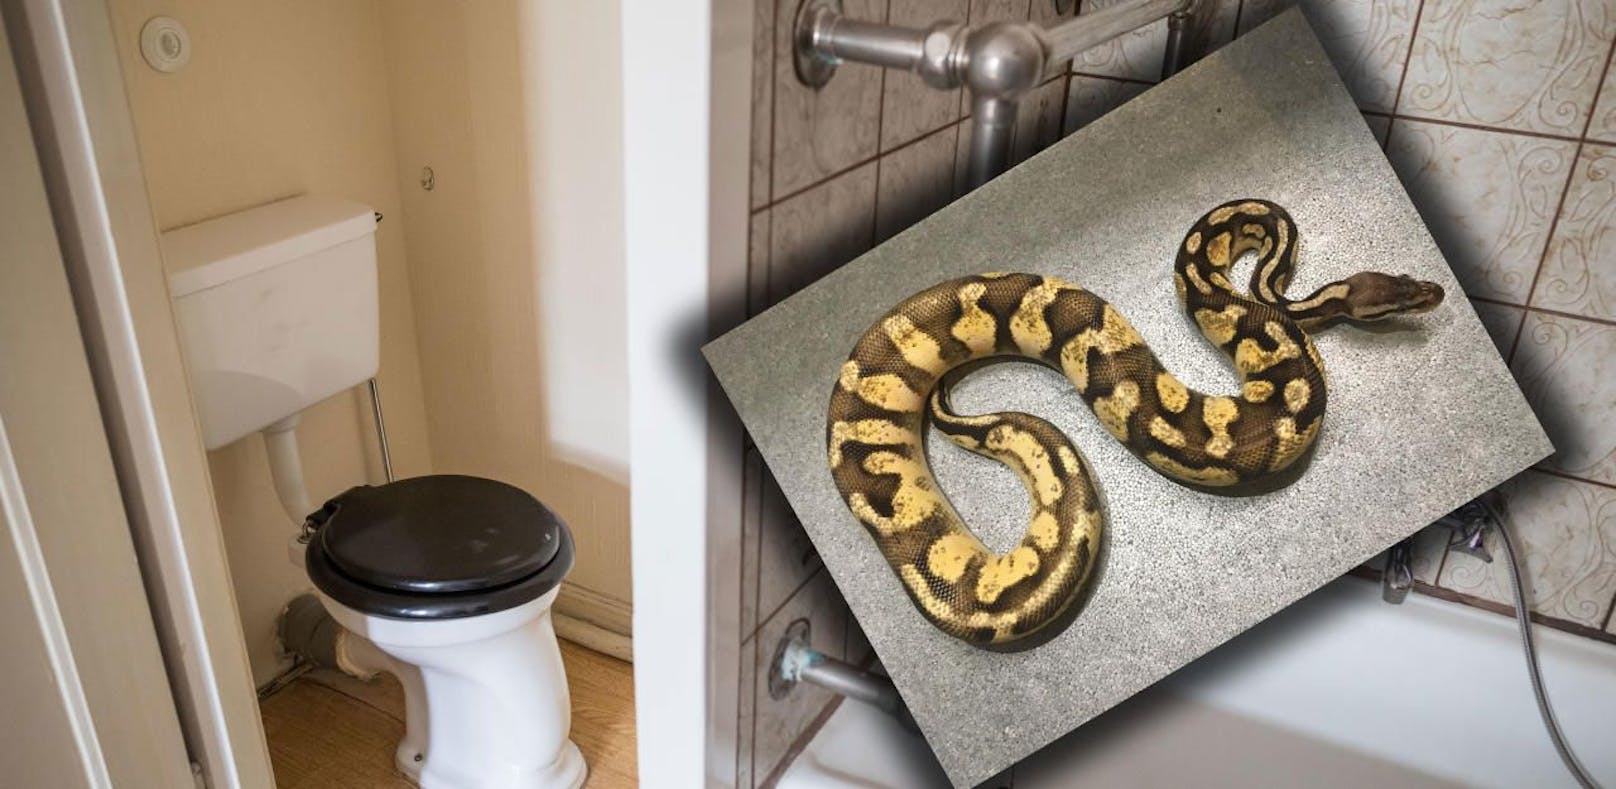 Die Python versteckte sich im Bad.